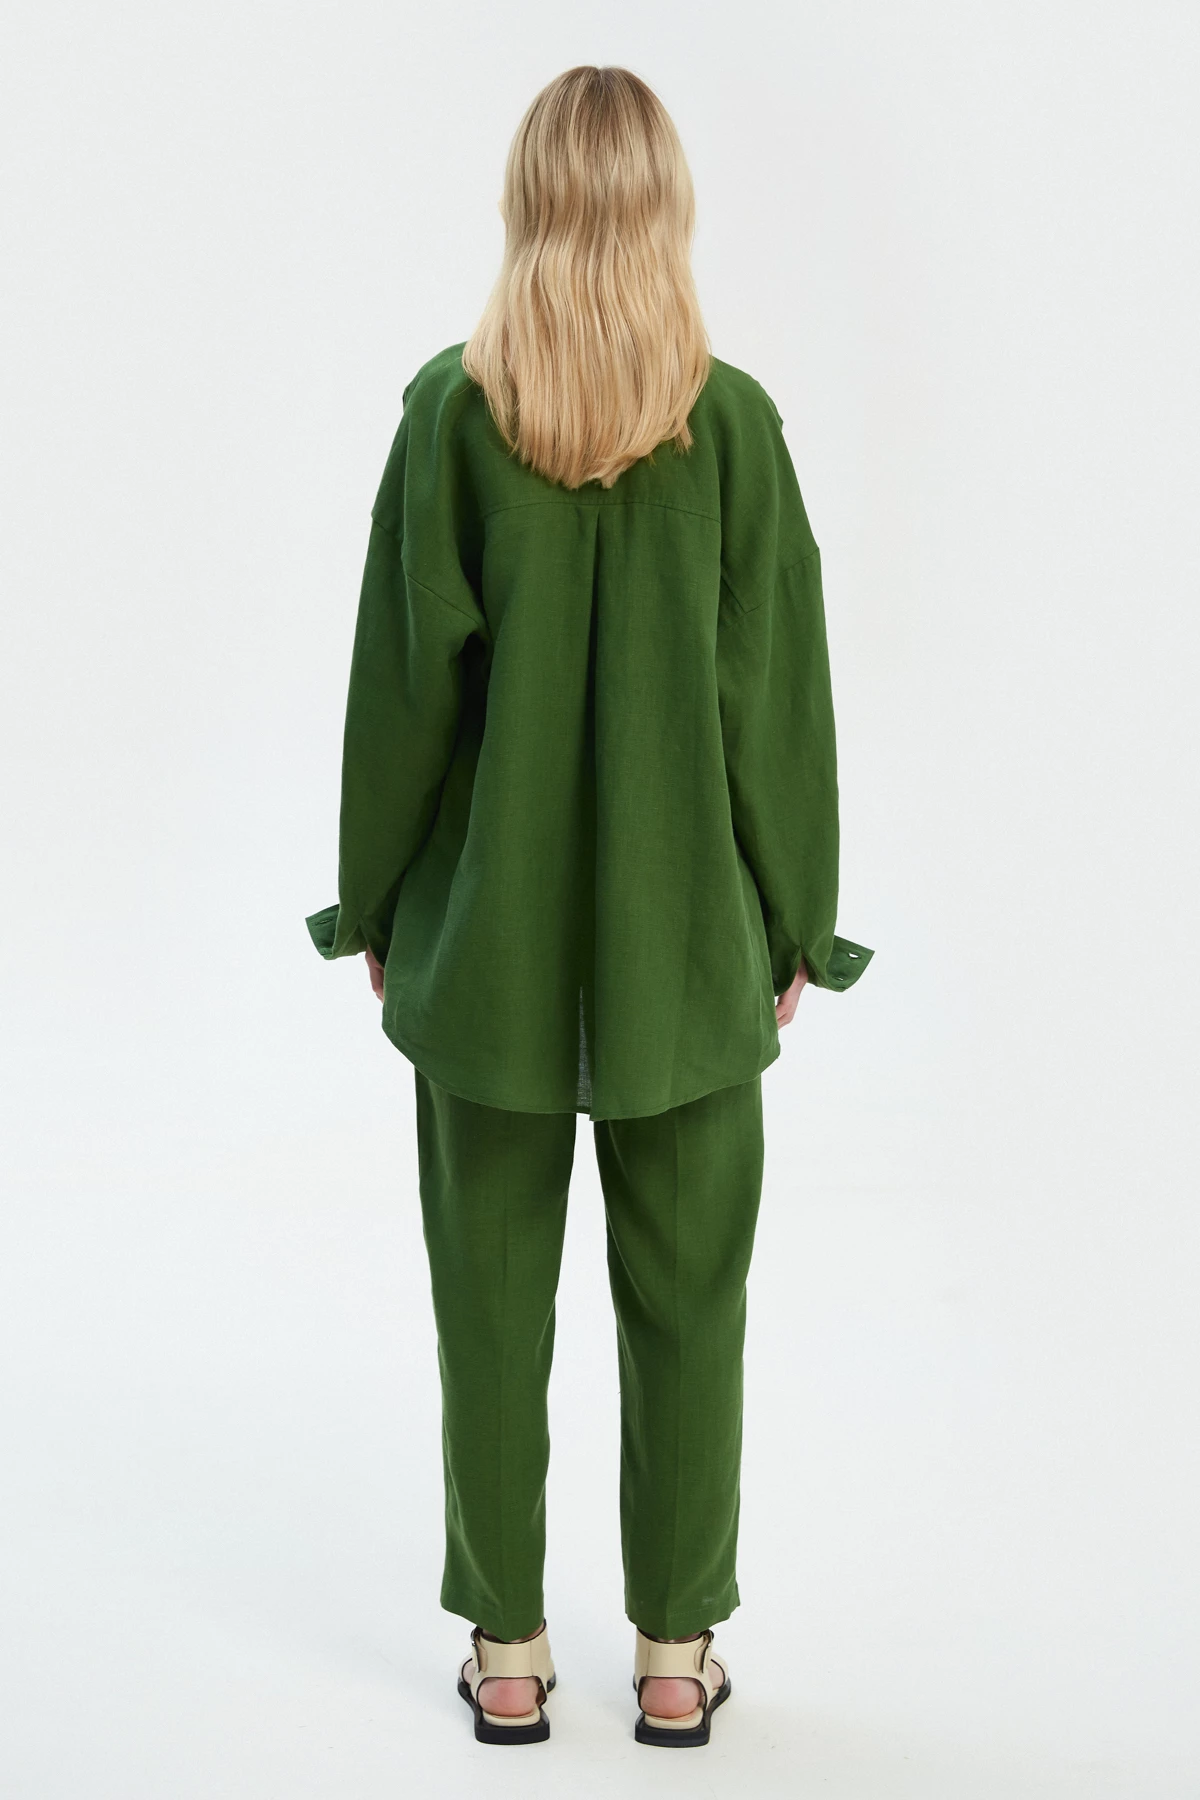 Зелені прямі вкорочені штани зі 100% льону, фото 4